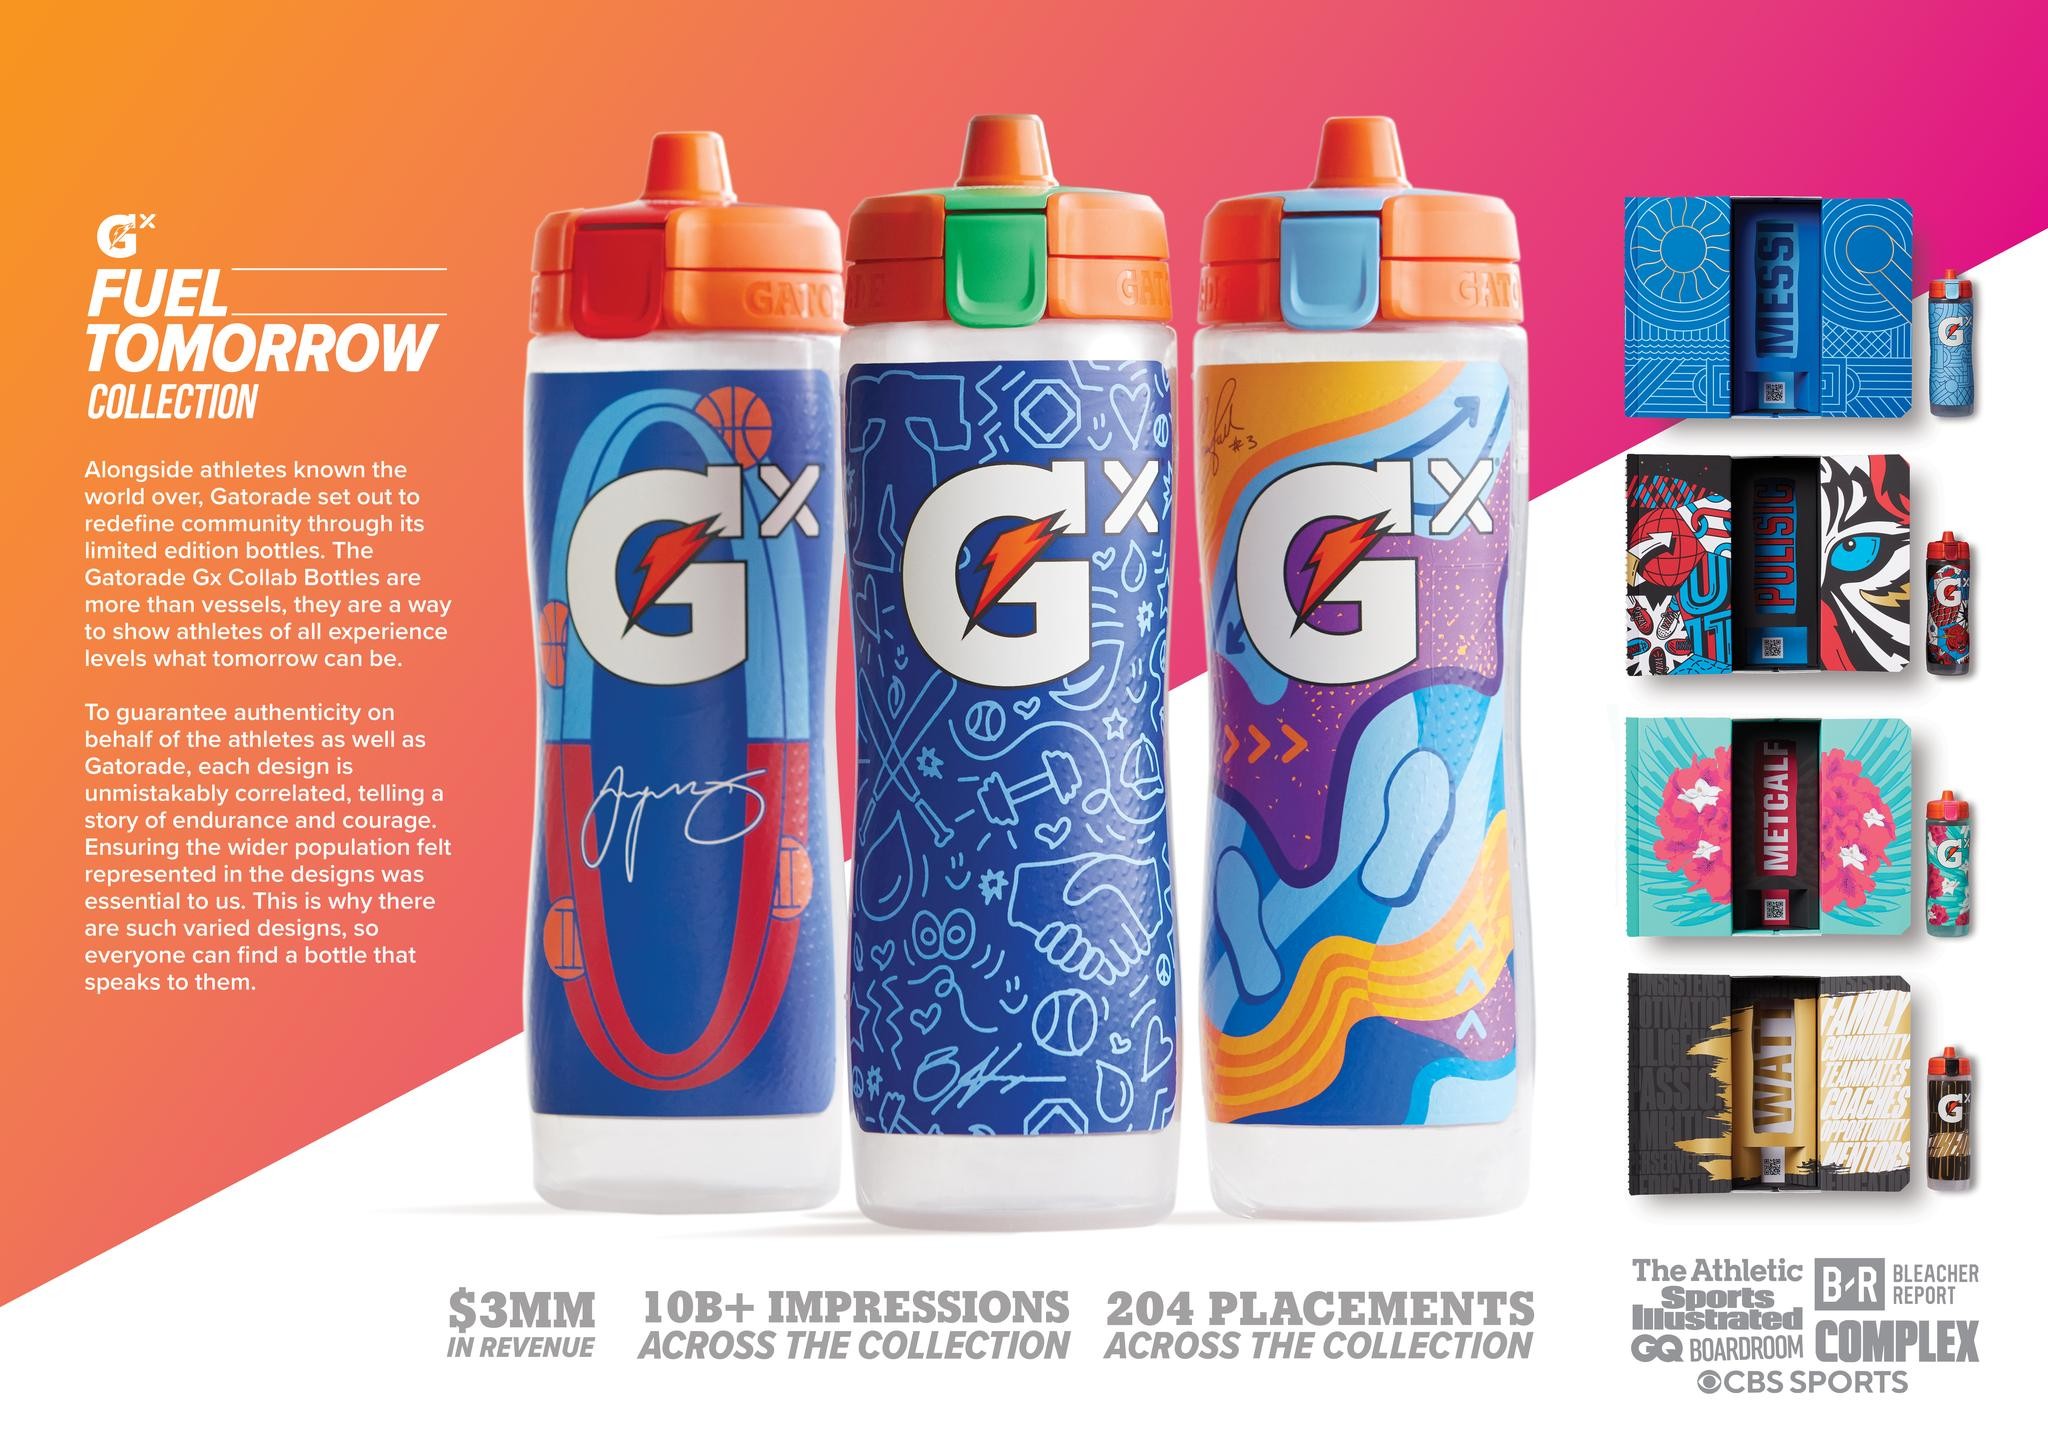 Gatorade GX Collab Bottles